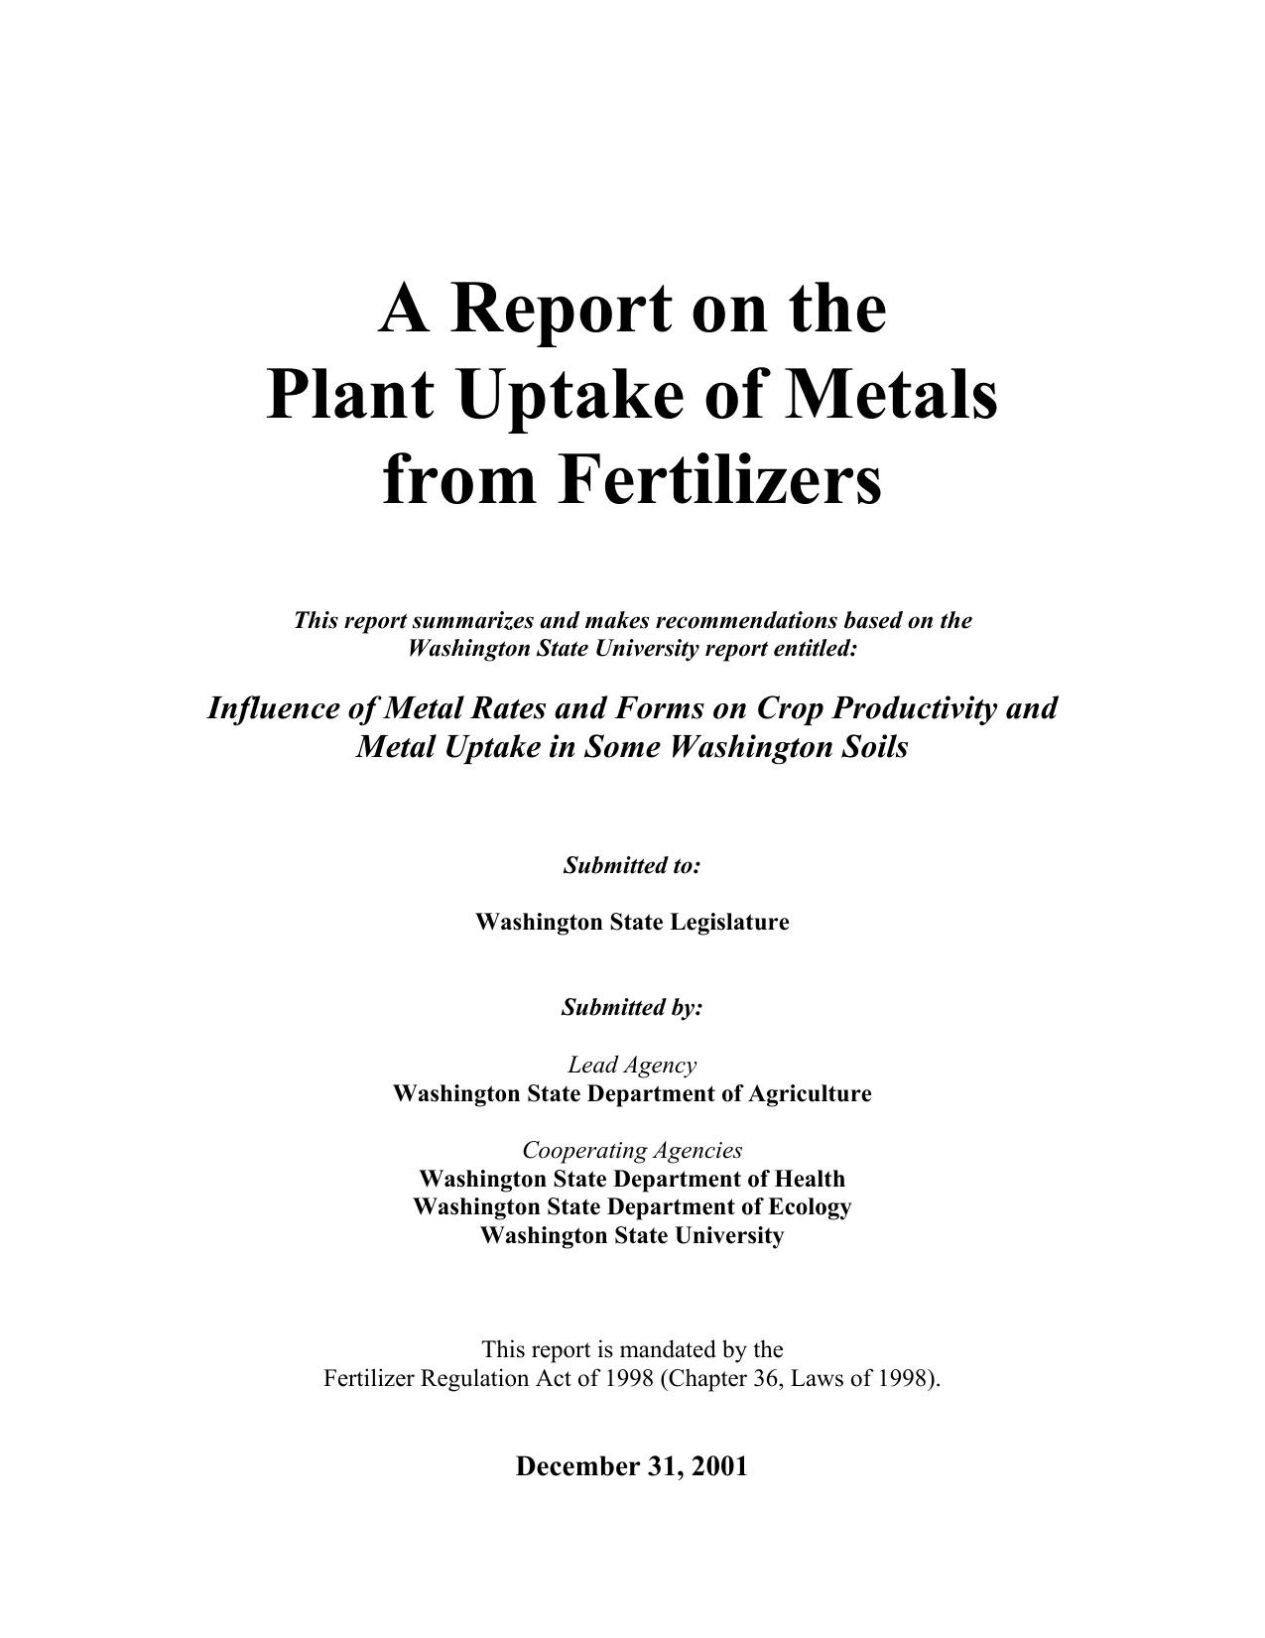 Plant uptake of metals